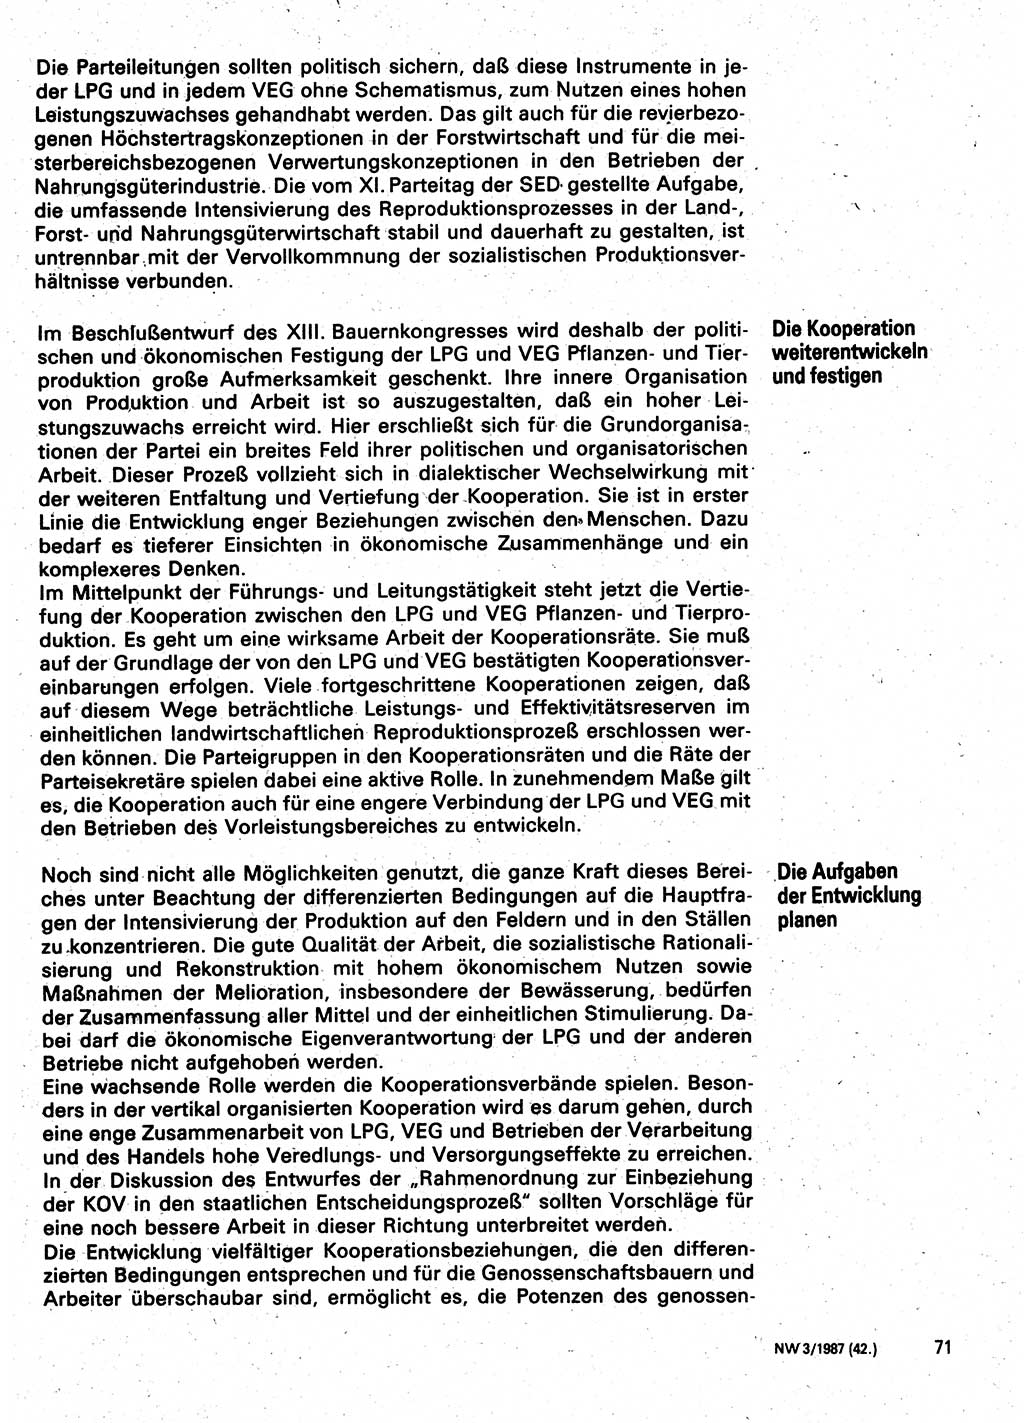 Neuer Weg (NW), Organ des Zentralkomitees (ZK) der SED (Sozialistische Einheitspartei Deutschlands) für Fragen des Parteilebens, 42. Jahrgang [Deutsche Demokratische Republik (DDR)] 1987, Seite 71 (NW ZK SED DDR 1987, S. 71)